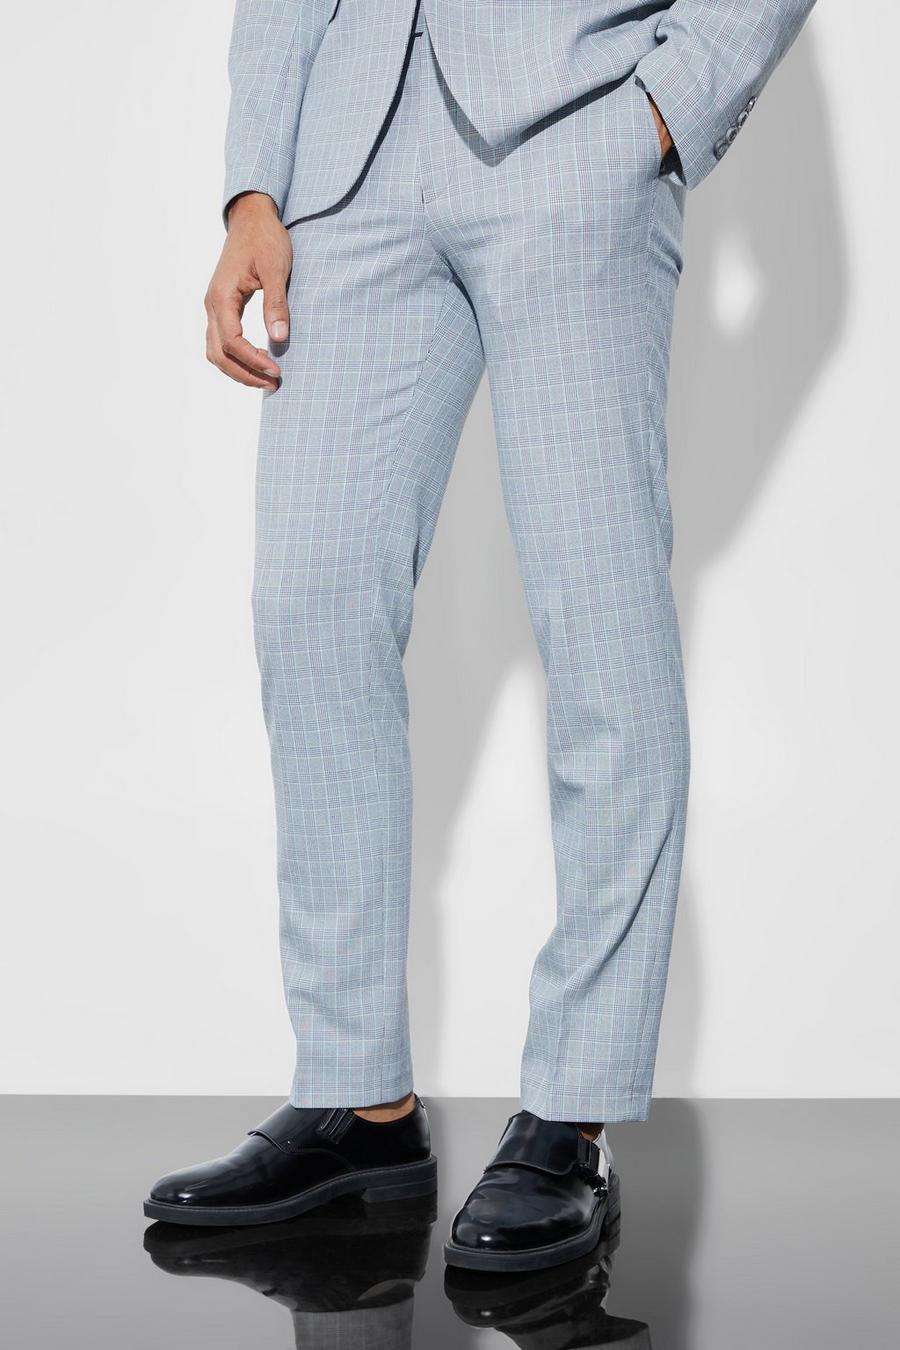 אפור בהיר gris  מכנסי חליפה עם הדפס משבצות בגזרה צרה